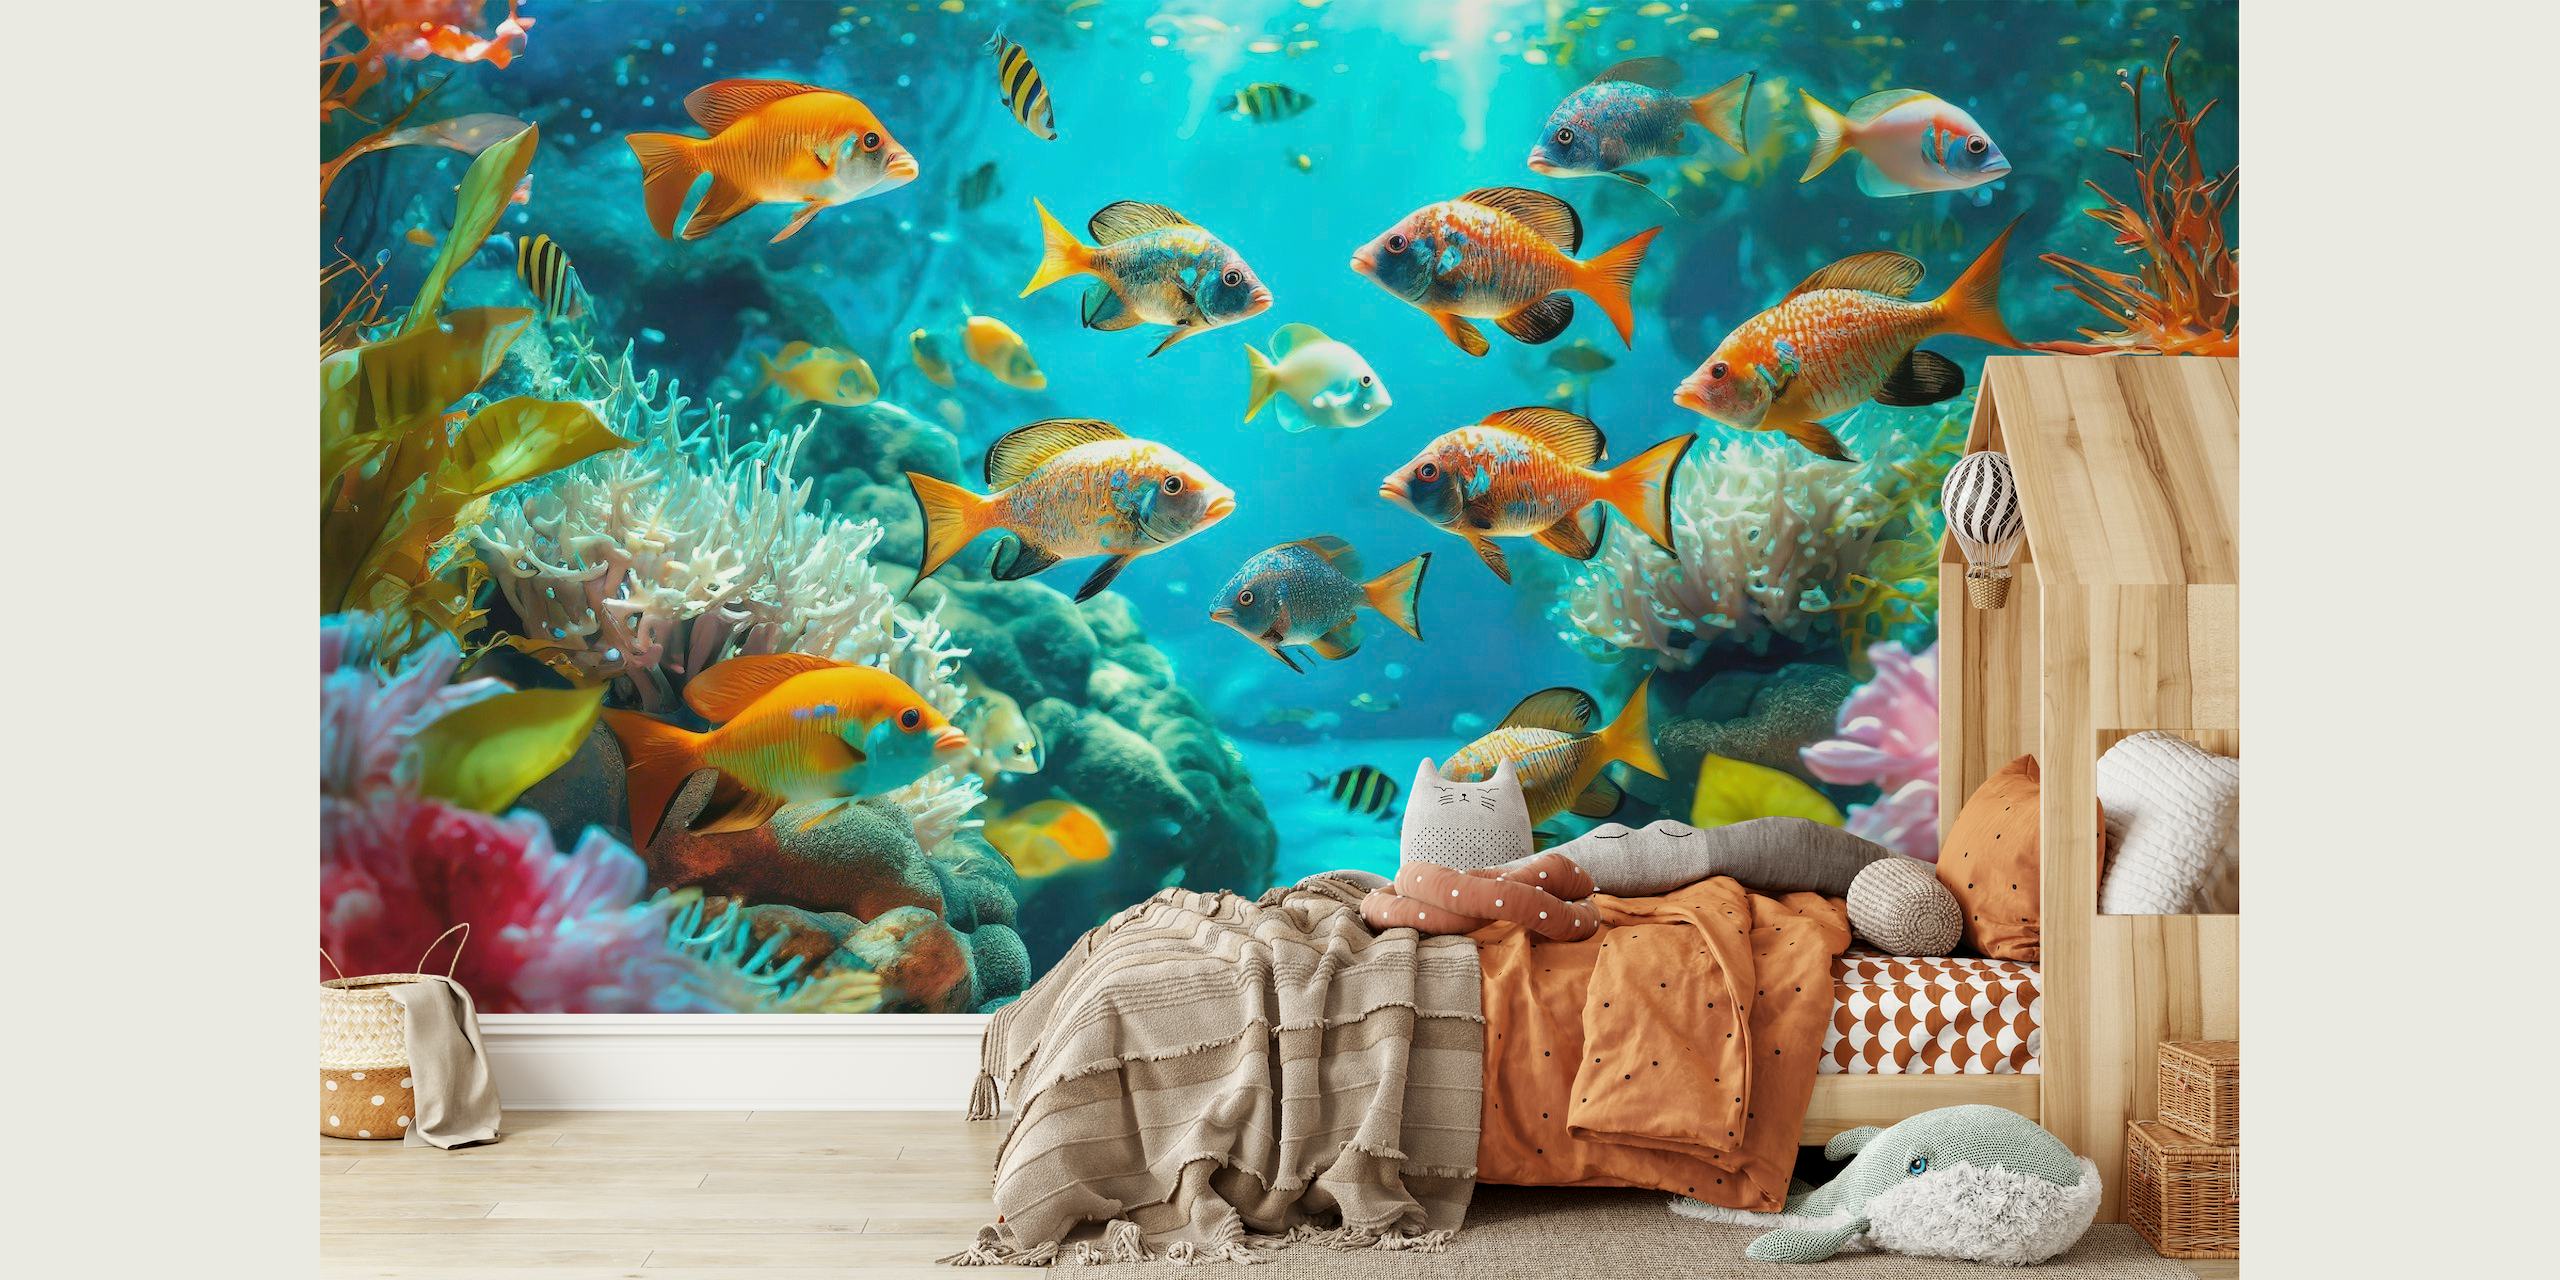 Živá podvodní nástěnná malba s barevnými rybami plavajícími mezi korály